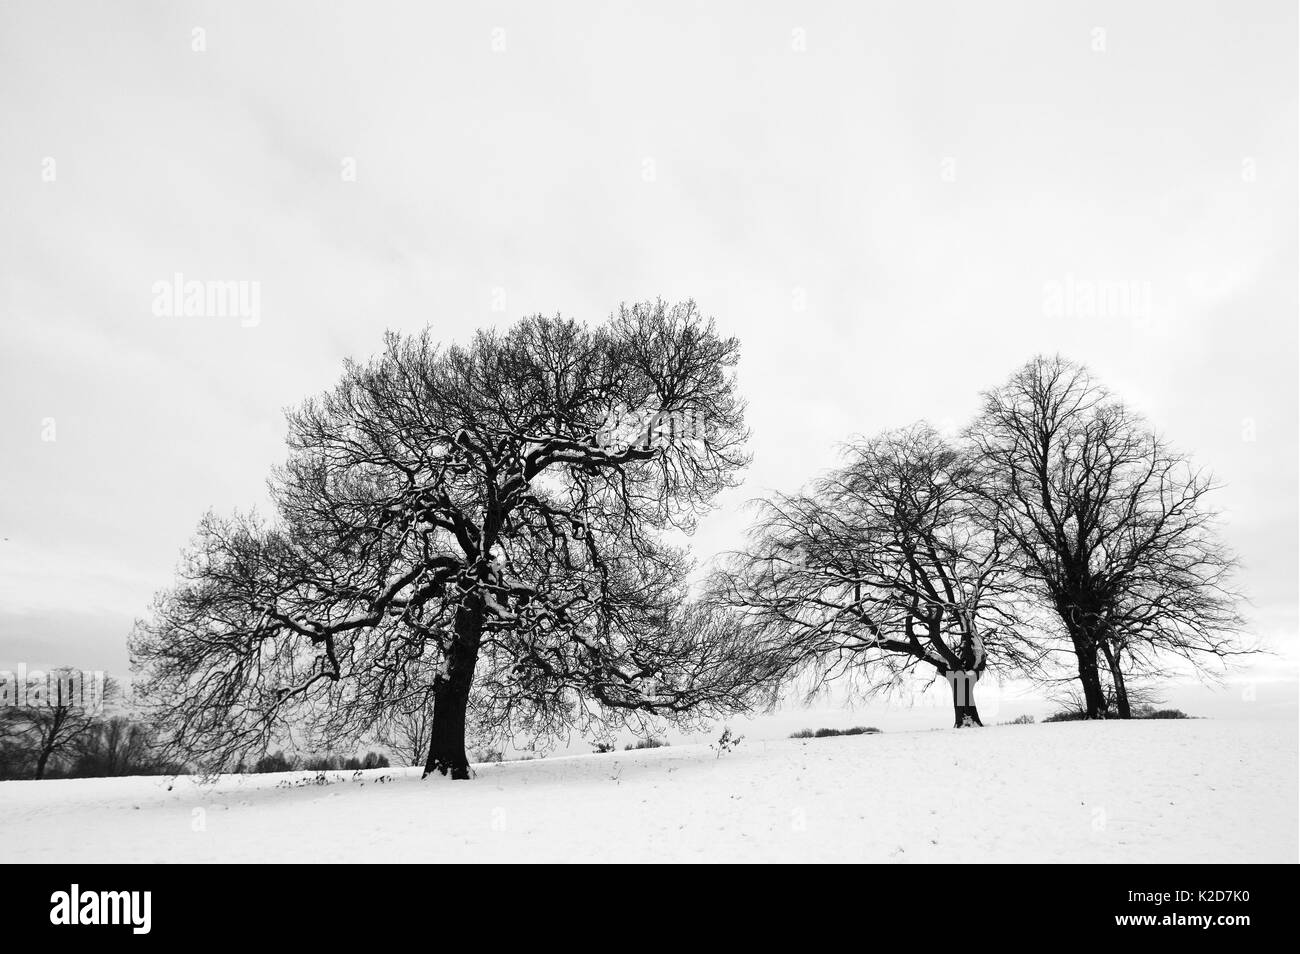 Arbre de chêne français (Quercus robur) et les hêtres (Fagus sylvatica) en paysage d'hiver, Hampstead Heath, Londres, Angleterre, Royaume-Uni. Janvier. Banque D'Images